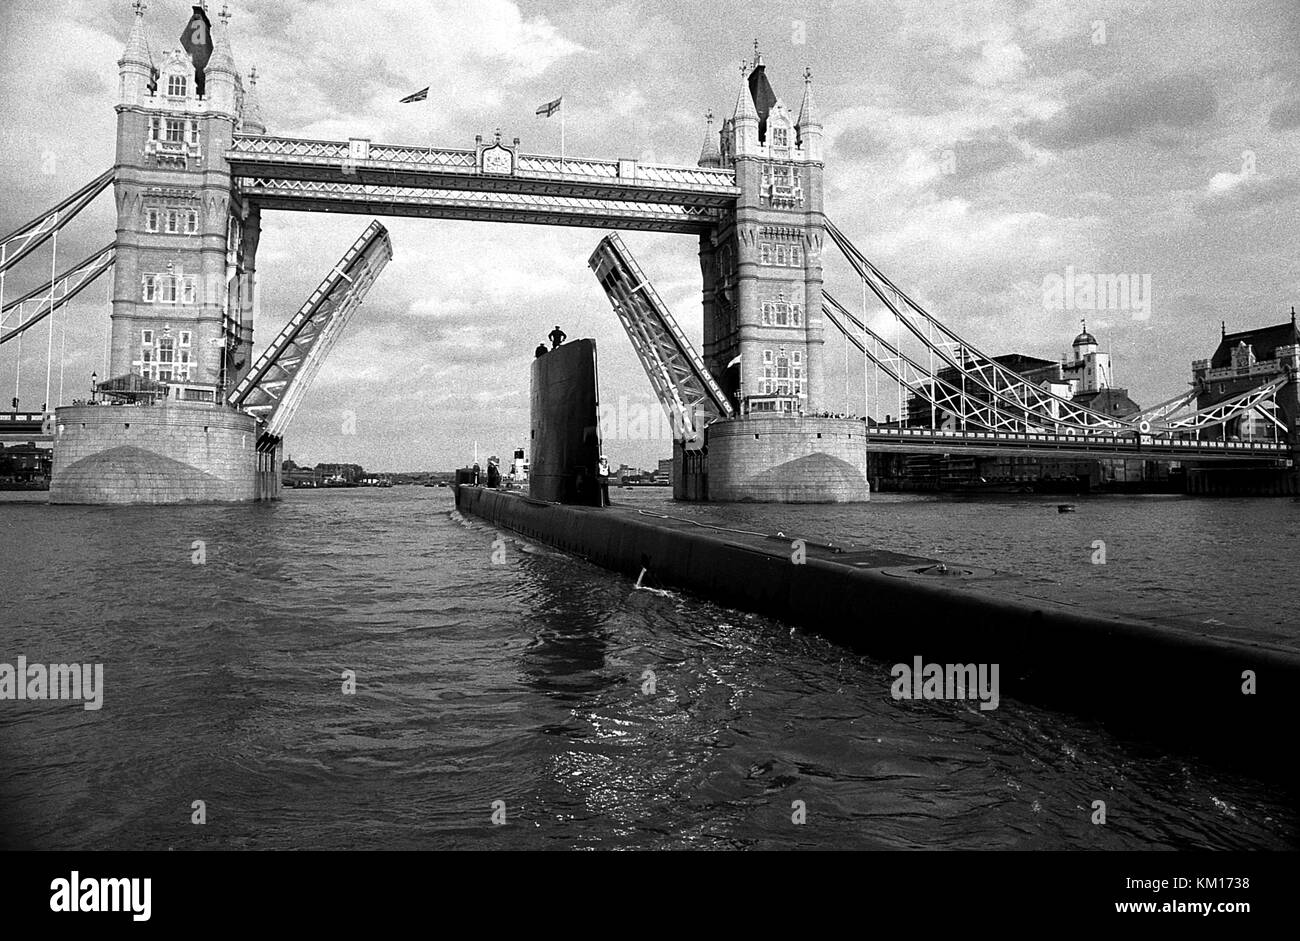 AJAXNETPHOTO. 9 Giugno, 1985. Londra, Inghilterra. - Lasciare Londra - sommergibile HMS OLYMPUS passa sotto il Tower Bridge dopo una visita di cortesia per la città. Foto:JONATHAN EASTLAND/AJAX. REF:HDD OLYMPUS 9 RP 008 Foto Stock